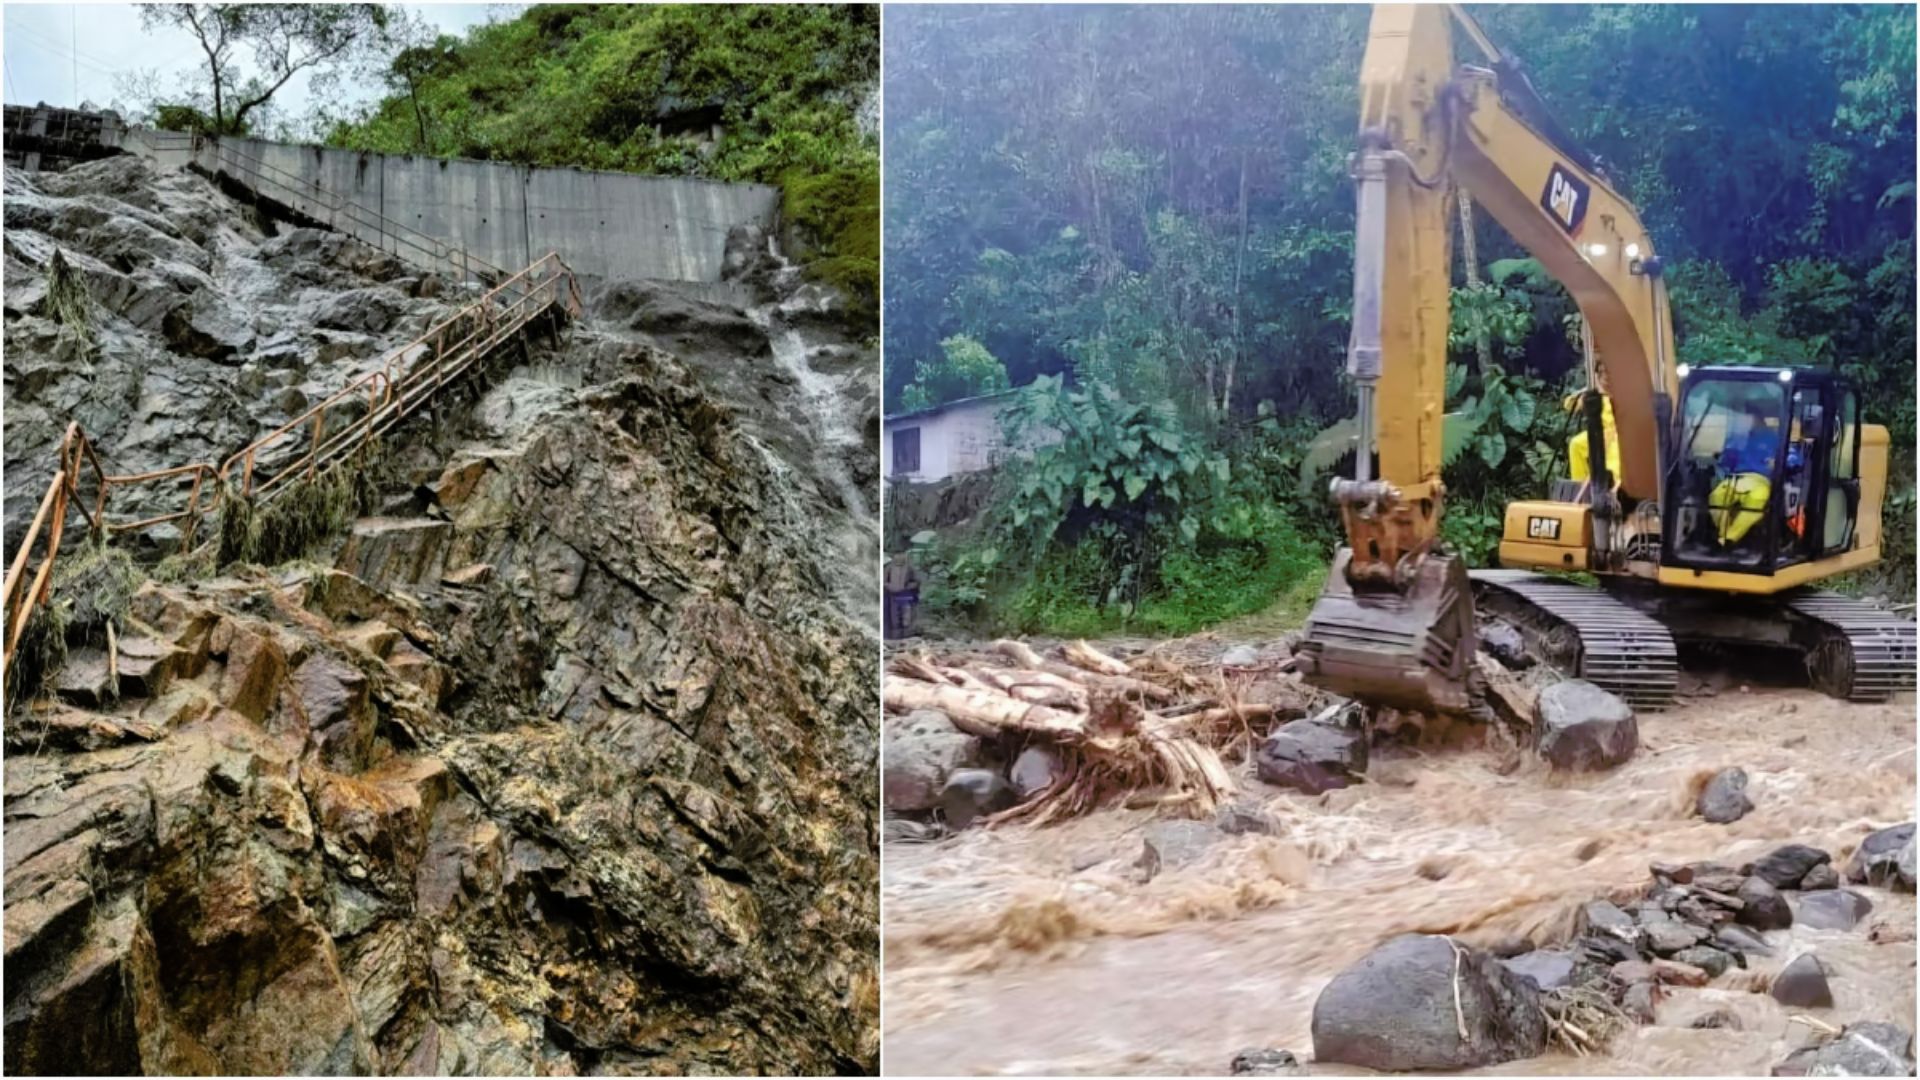 6 killed, 19 others Injured In Equador After Heavy Rains Trigger Landslide